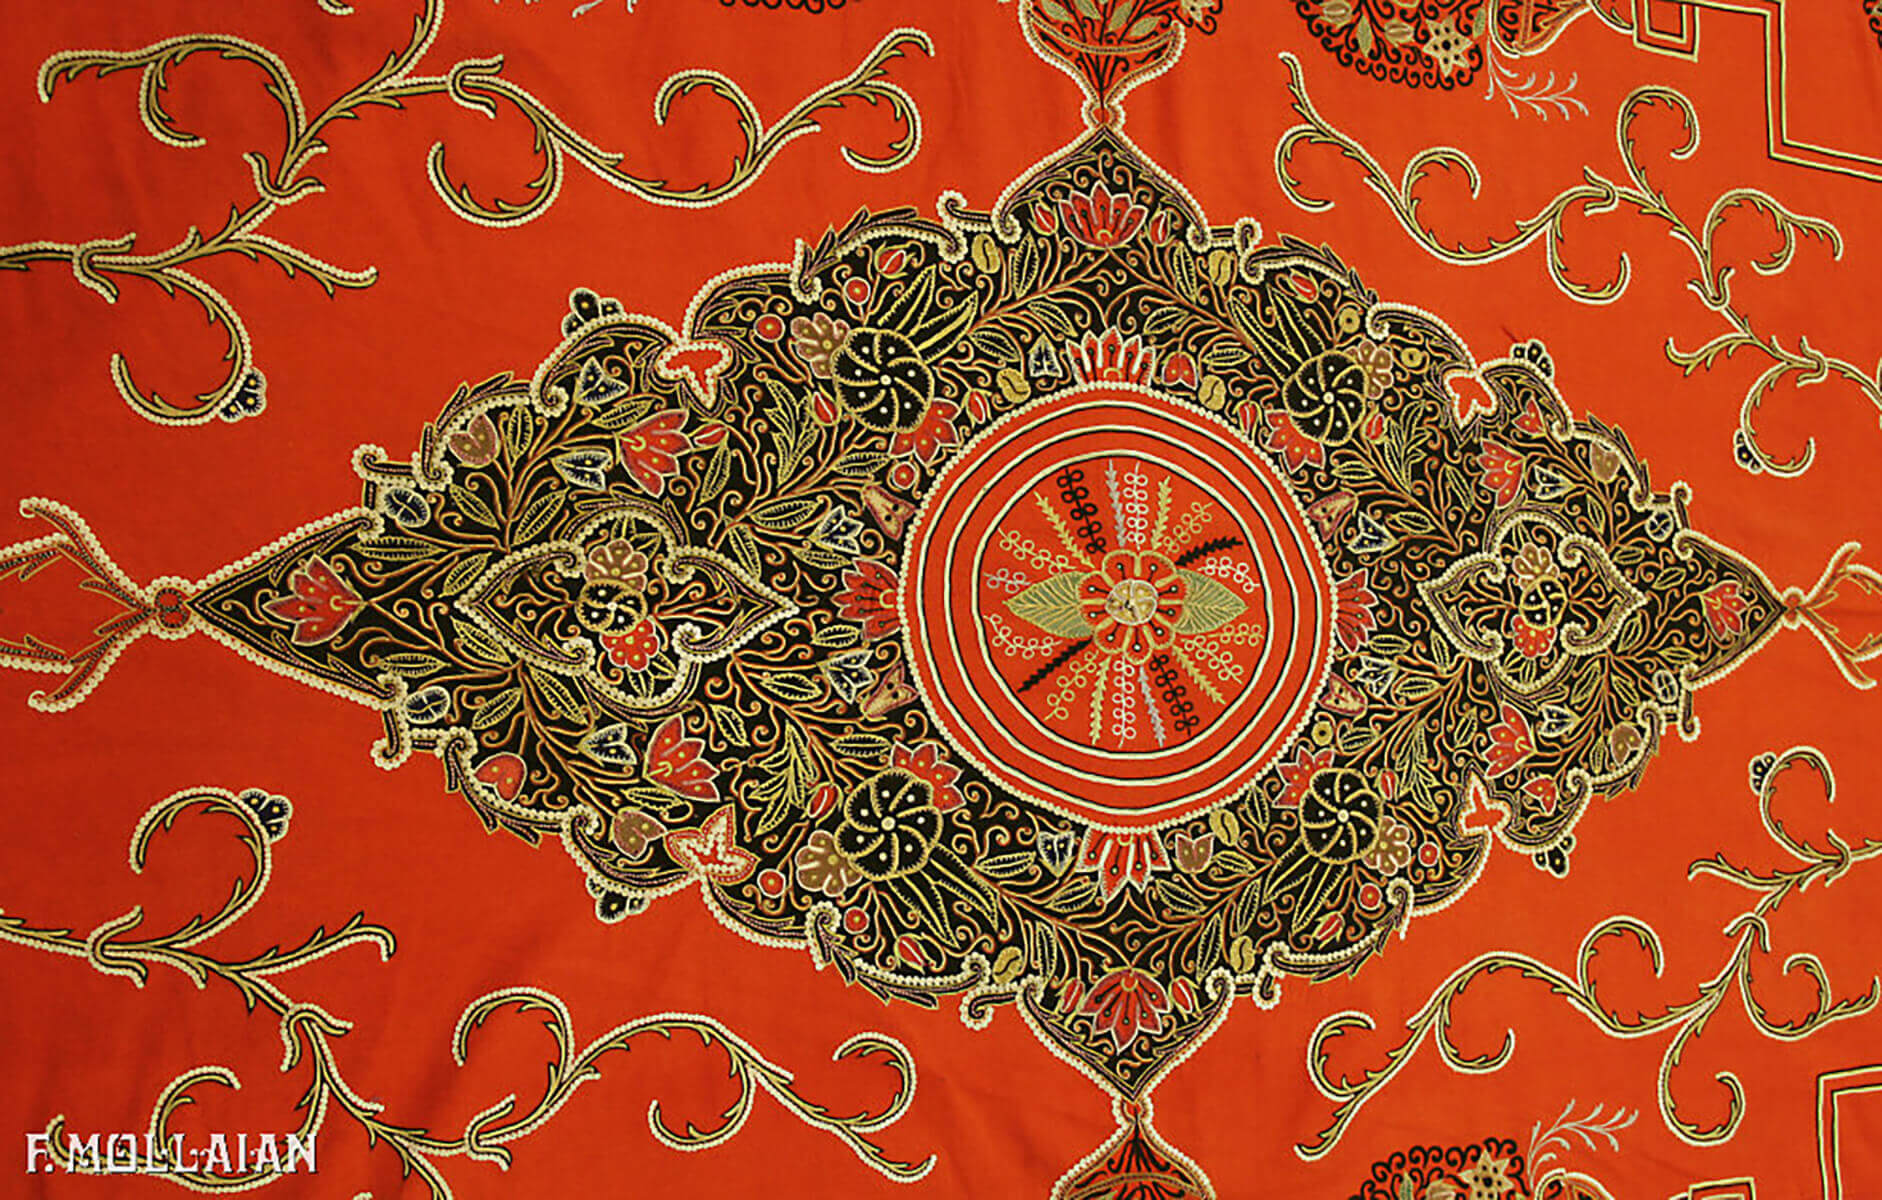 Textil Persa Antiguo Rashti-Duzi n°:35012796